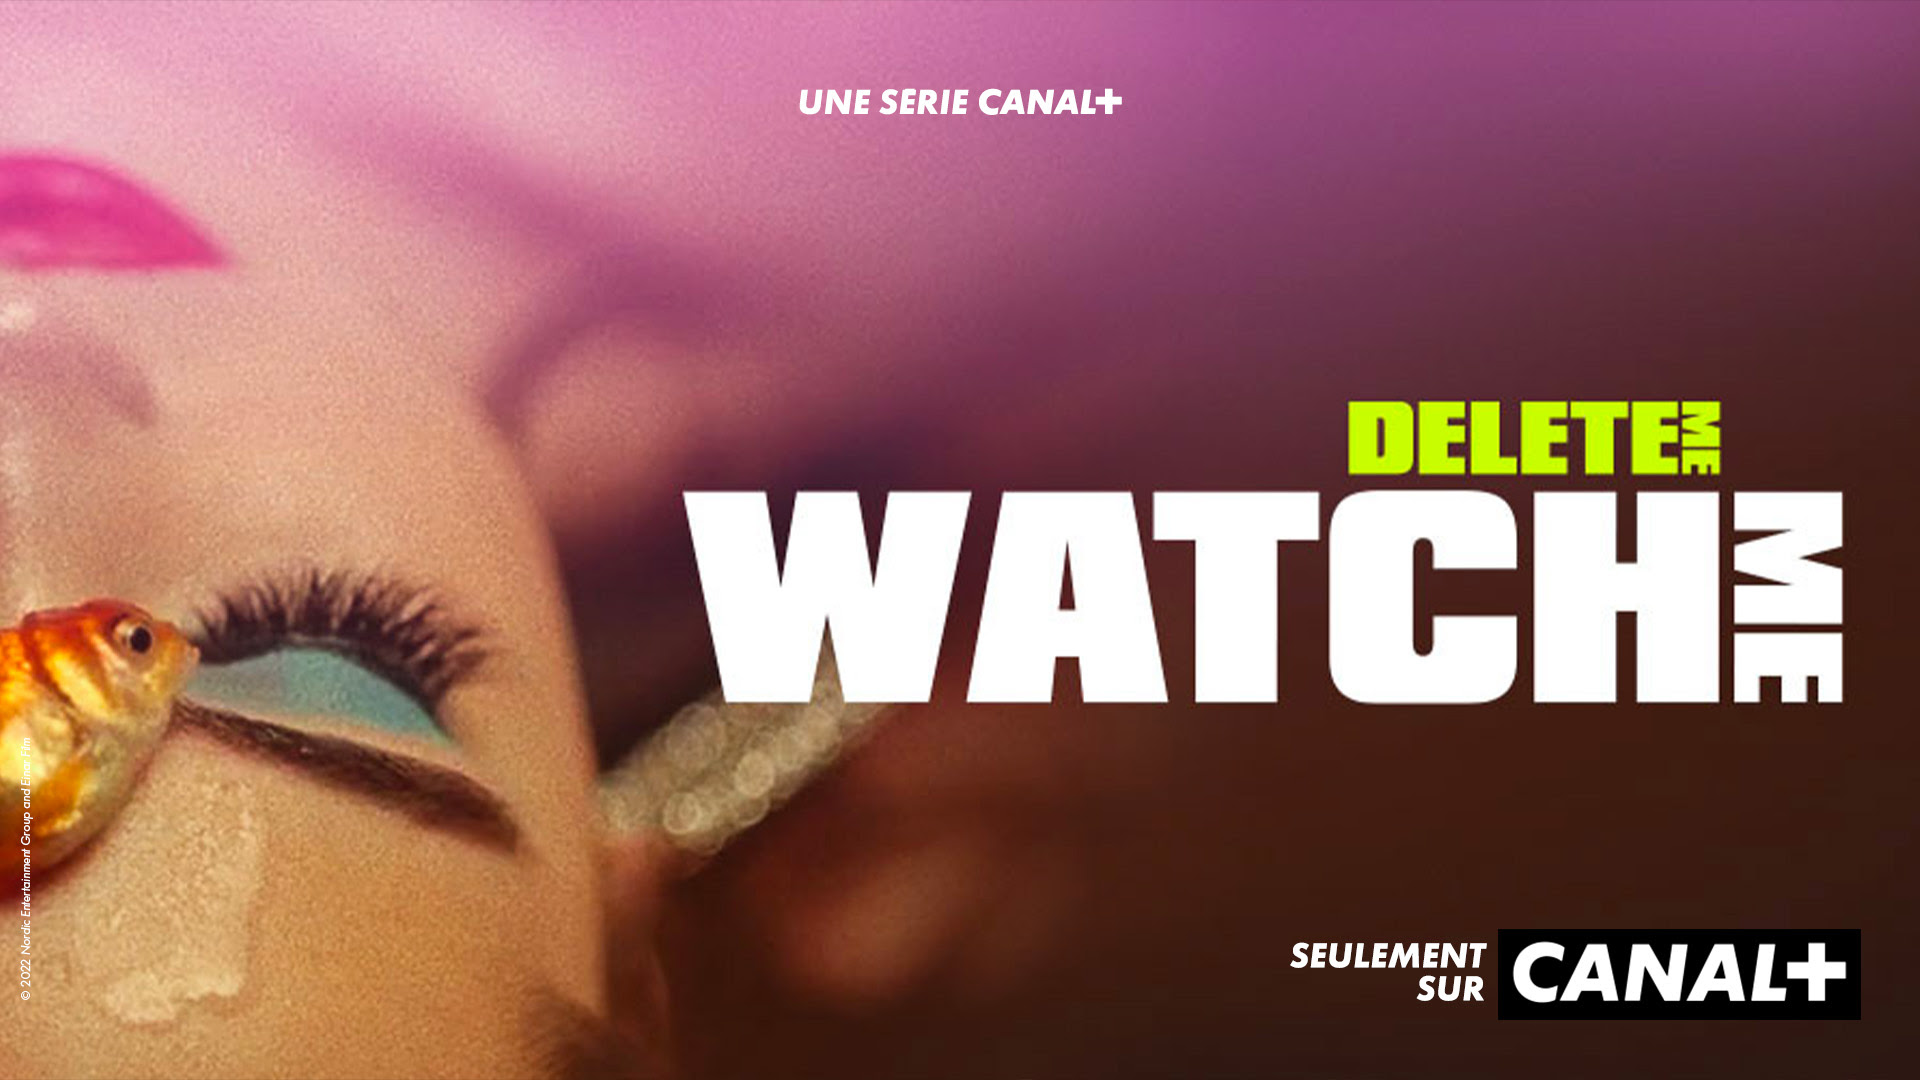 Delete Me : watch Me, en exclu à partir du 4 juin sur Canal+ !